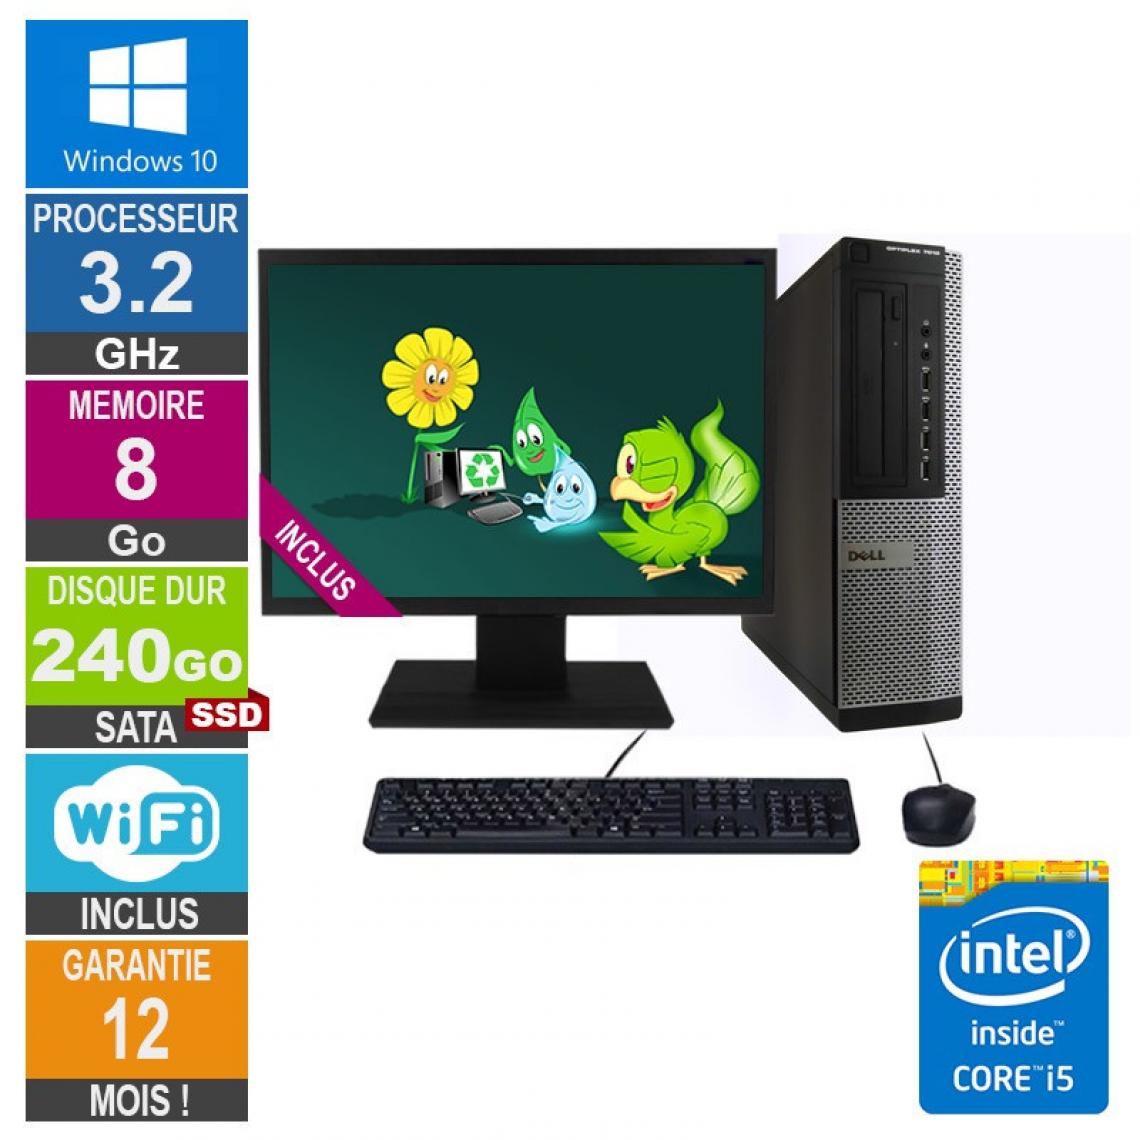 Dell - PC Dell Optiplex 7010 DT Core i5-3470 3.20GHz 8Go/240Go SSD Wifi W10 + Ecran 19 - PC Fixe